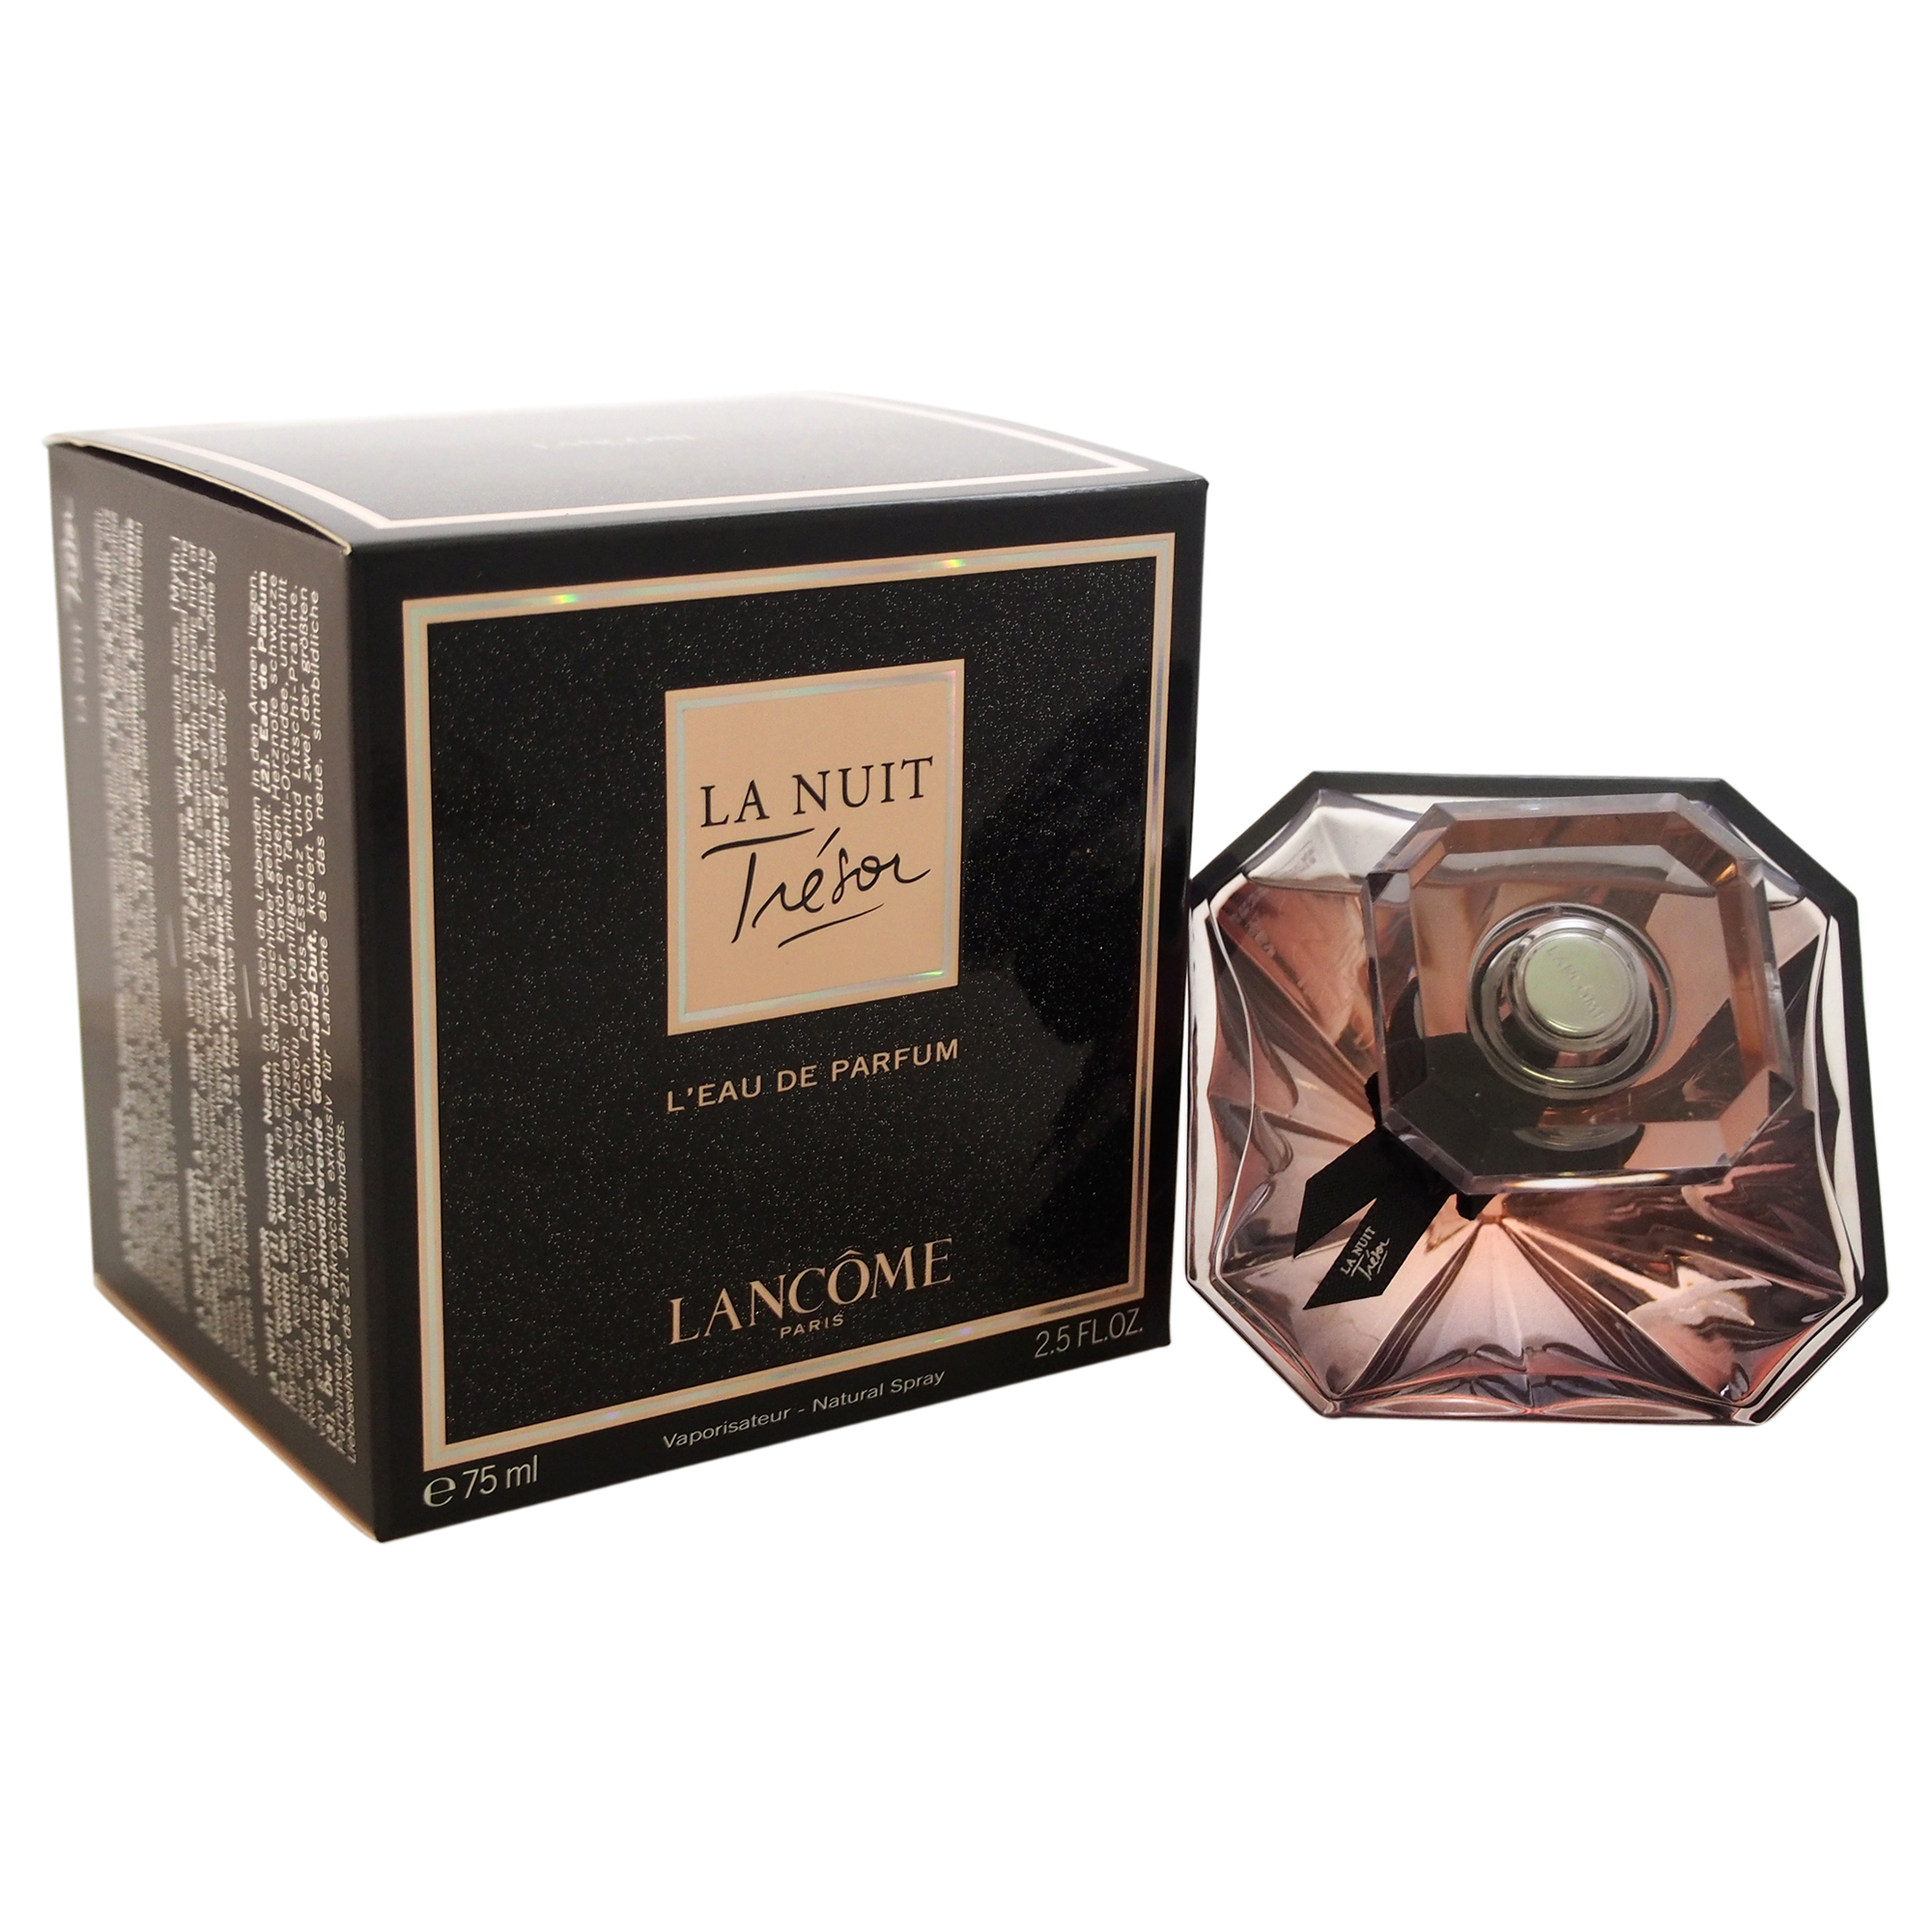 La Nuit Tresor by Lancome for Women - 2.5 oz L'Eau De Parfum